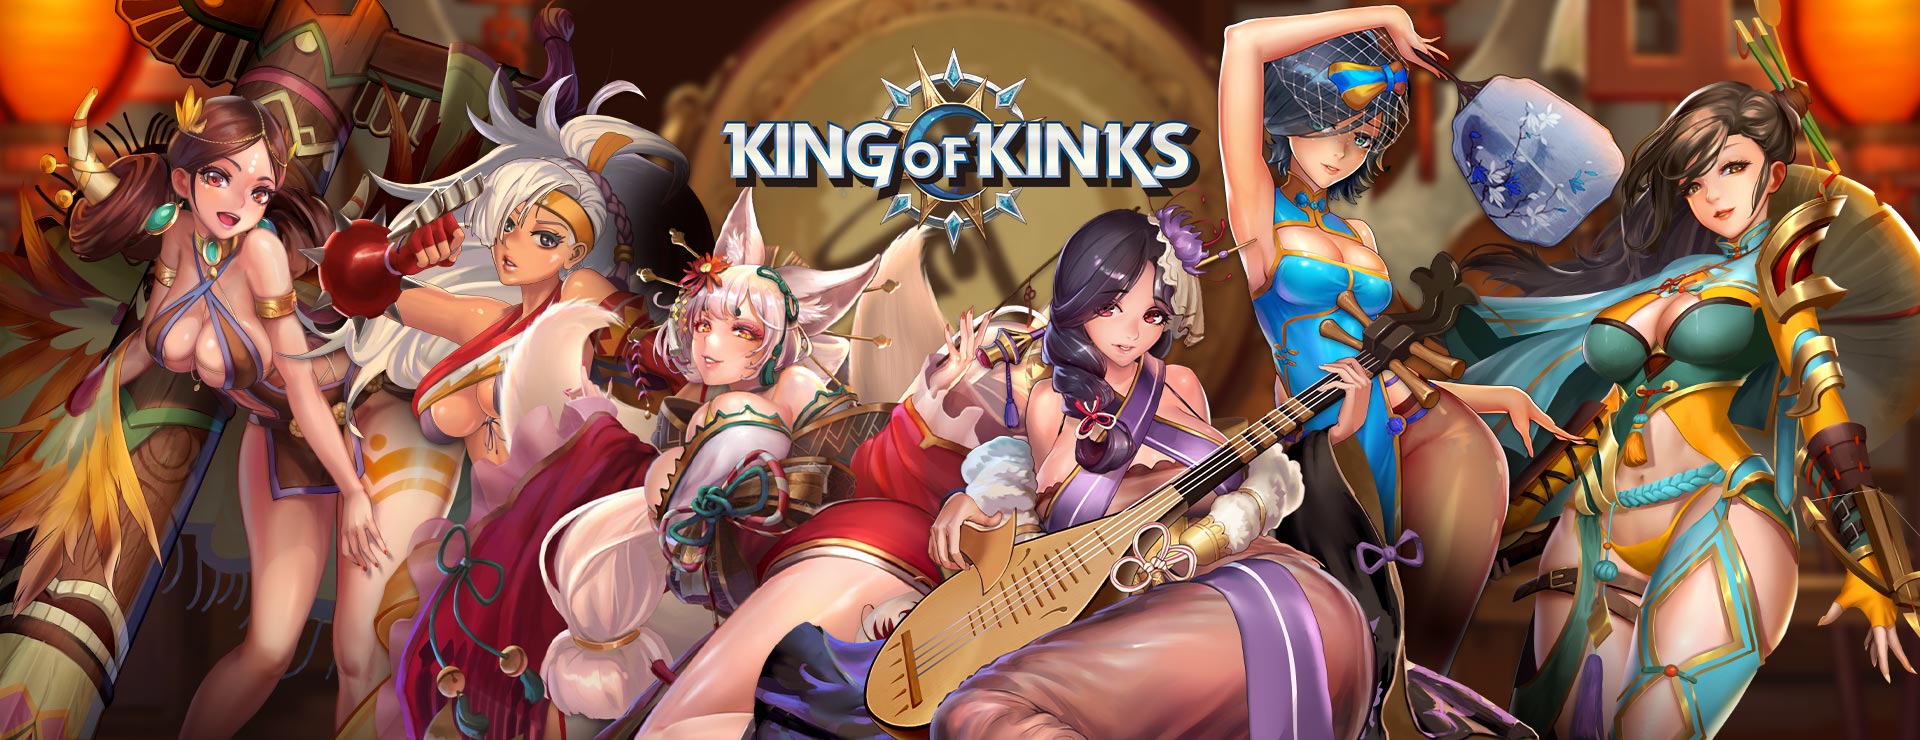 King of Kinks Game - Aventura Acción Juego